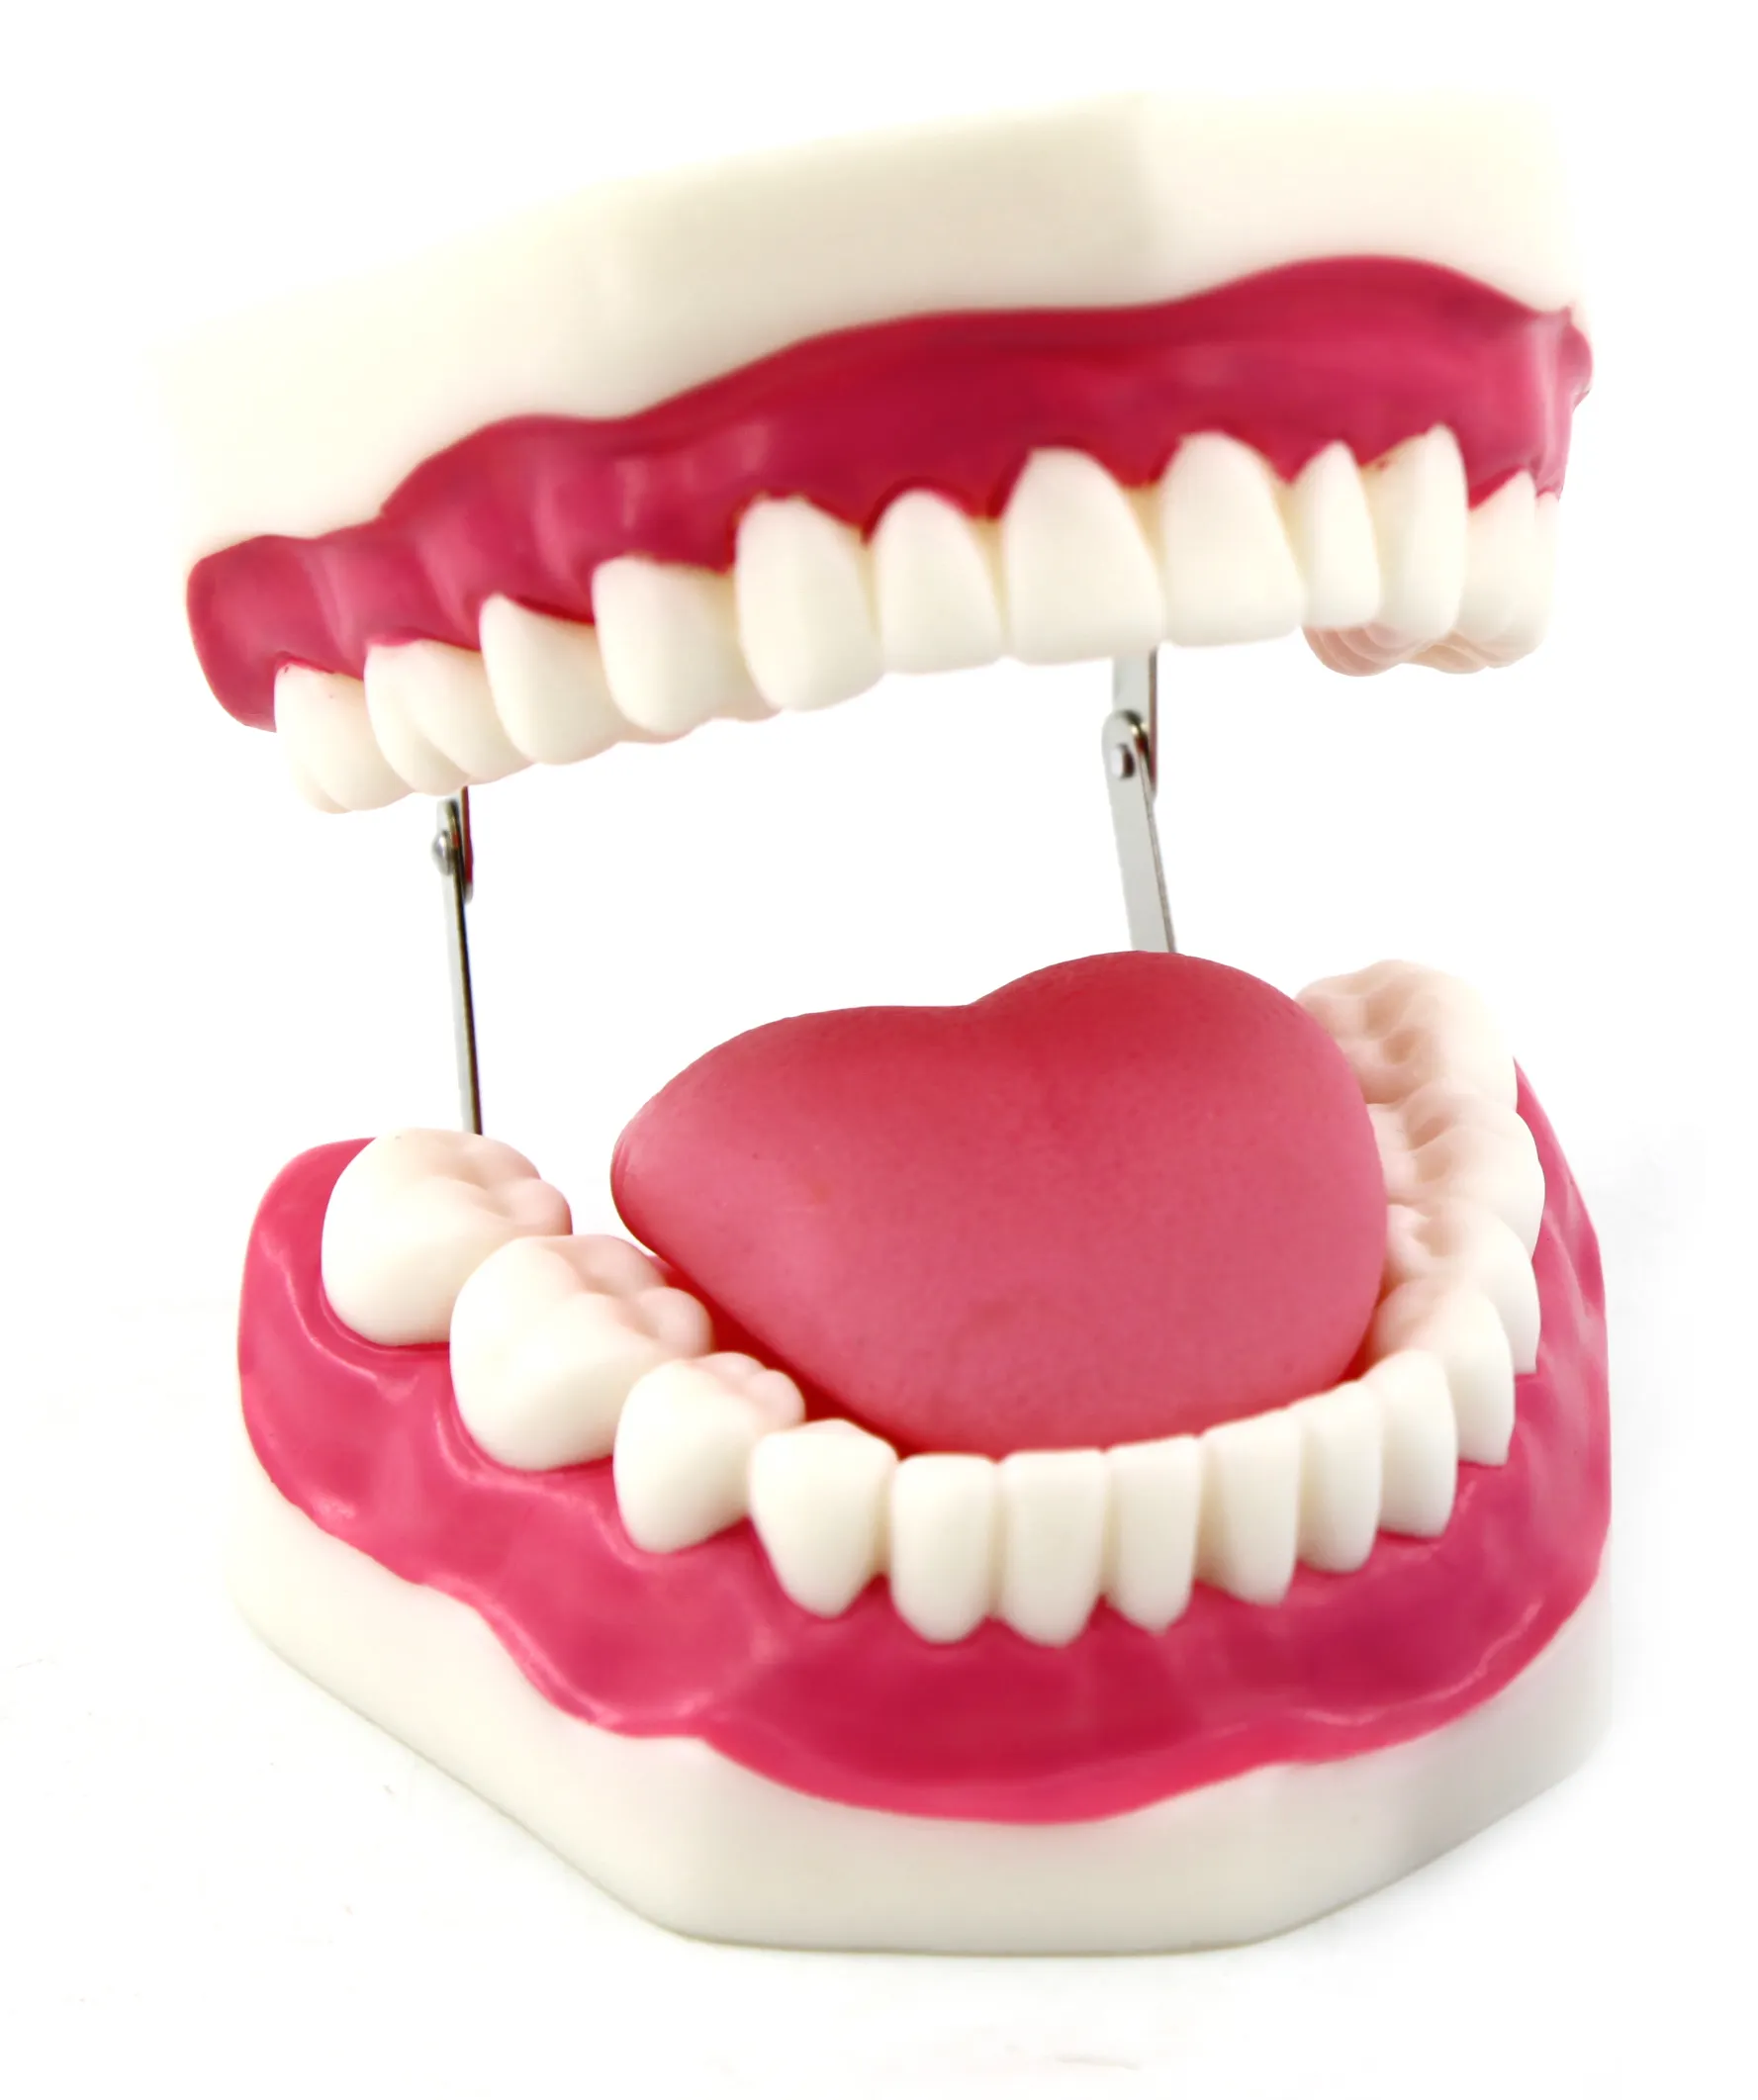 Bestseller-Modell für menschliche Zahn zähne zur Untersuchung der menschlichen Zahn hygiene mit dem Modell der Zungen molaren zähne